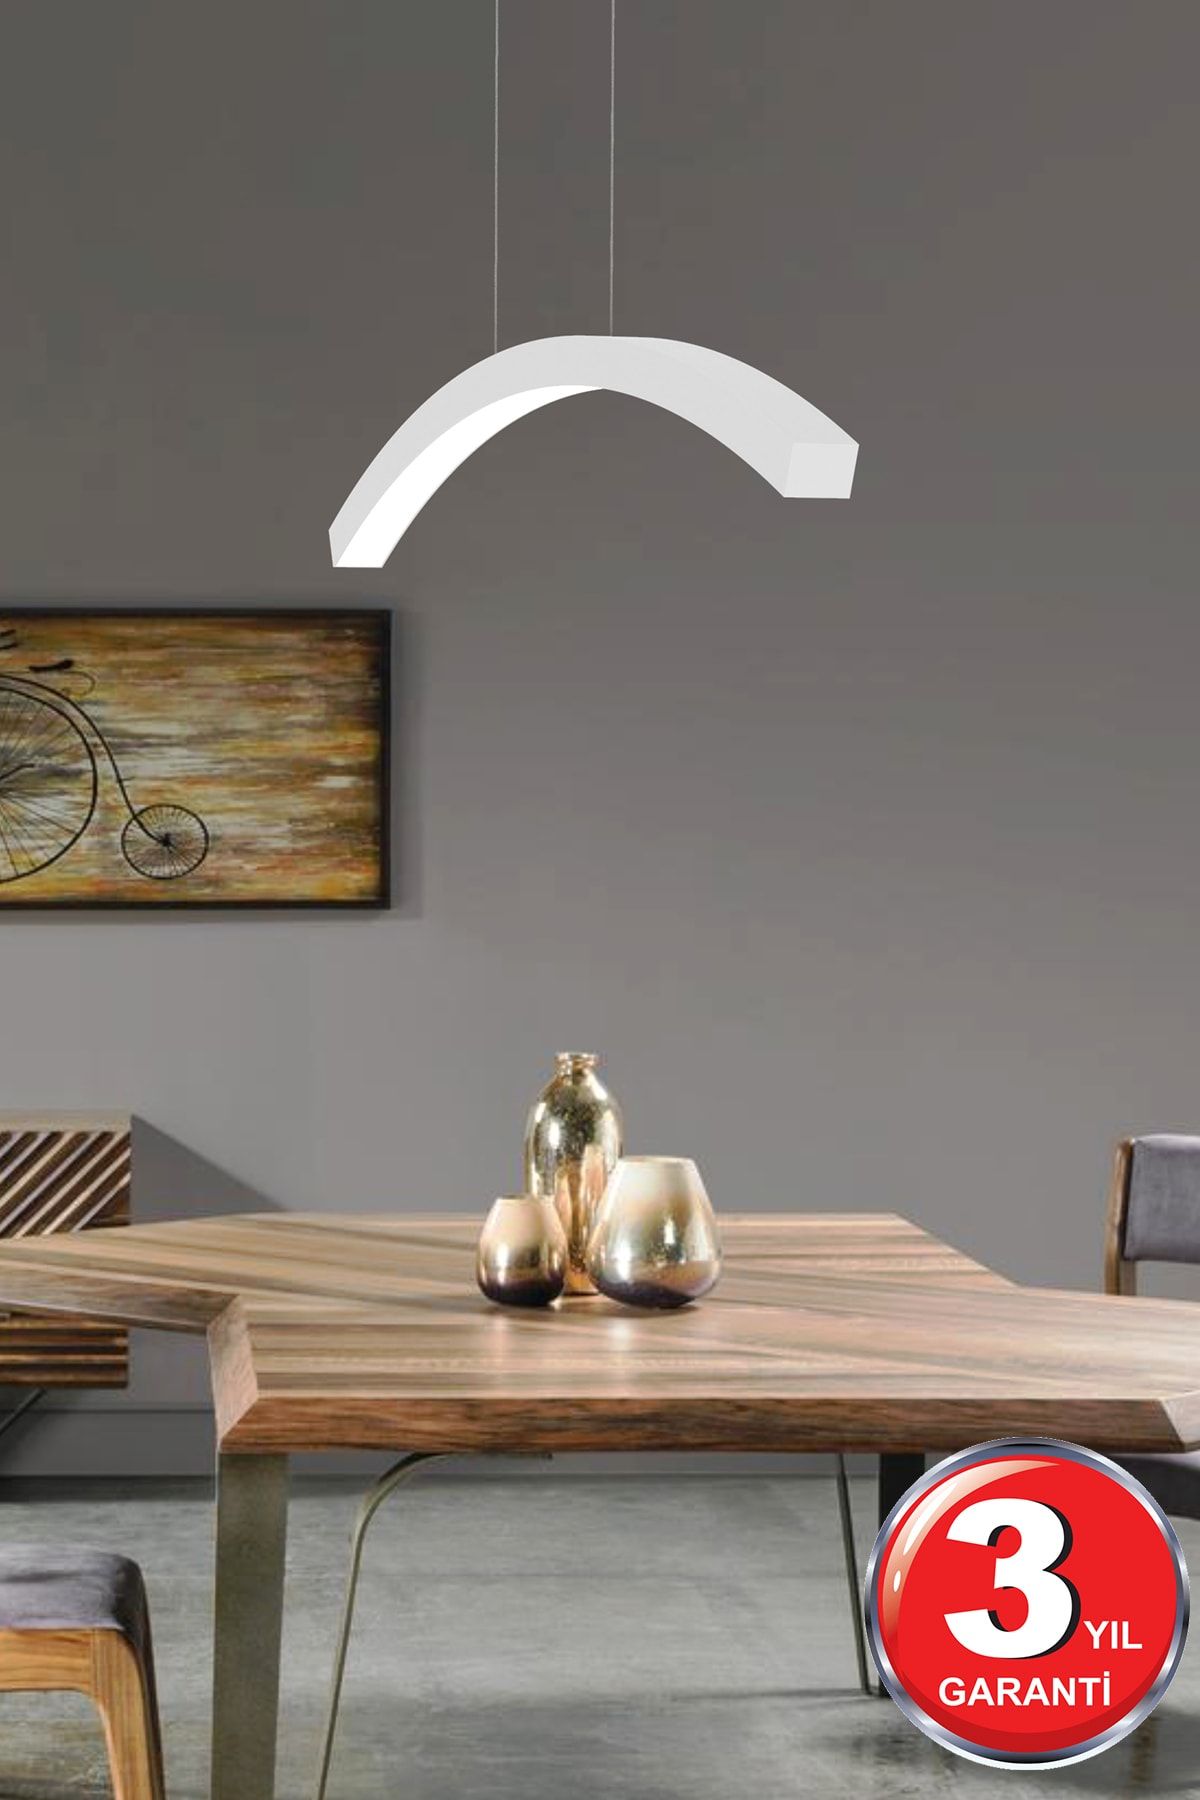 Hegza Lighting Luna ( Beyaz Kasa, Beyaz Işık ) Ledli Modern Led Avize, Salon, Mutfak, Oturma Yatak Odası, Sarkıt